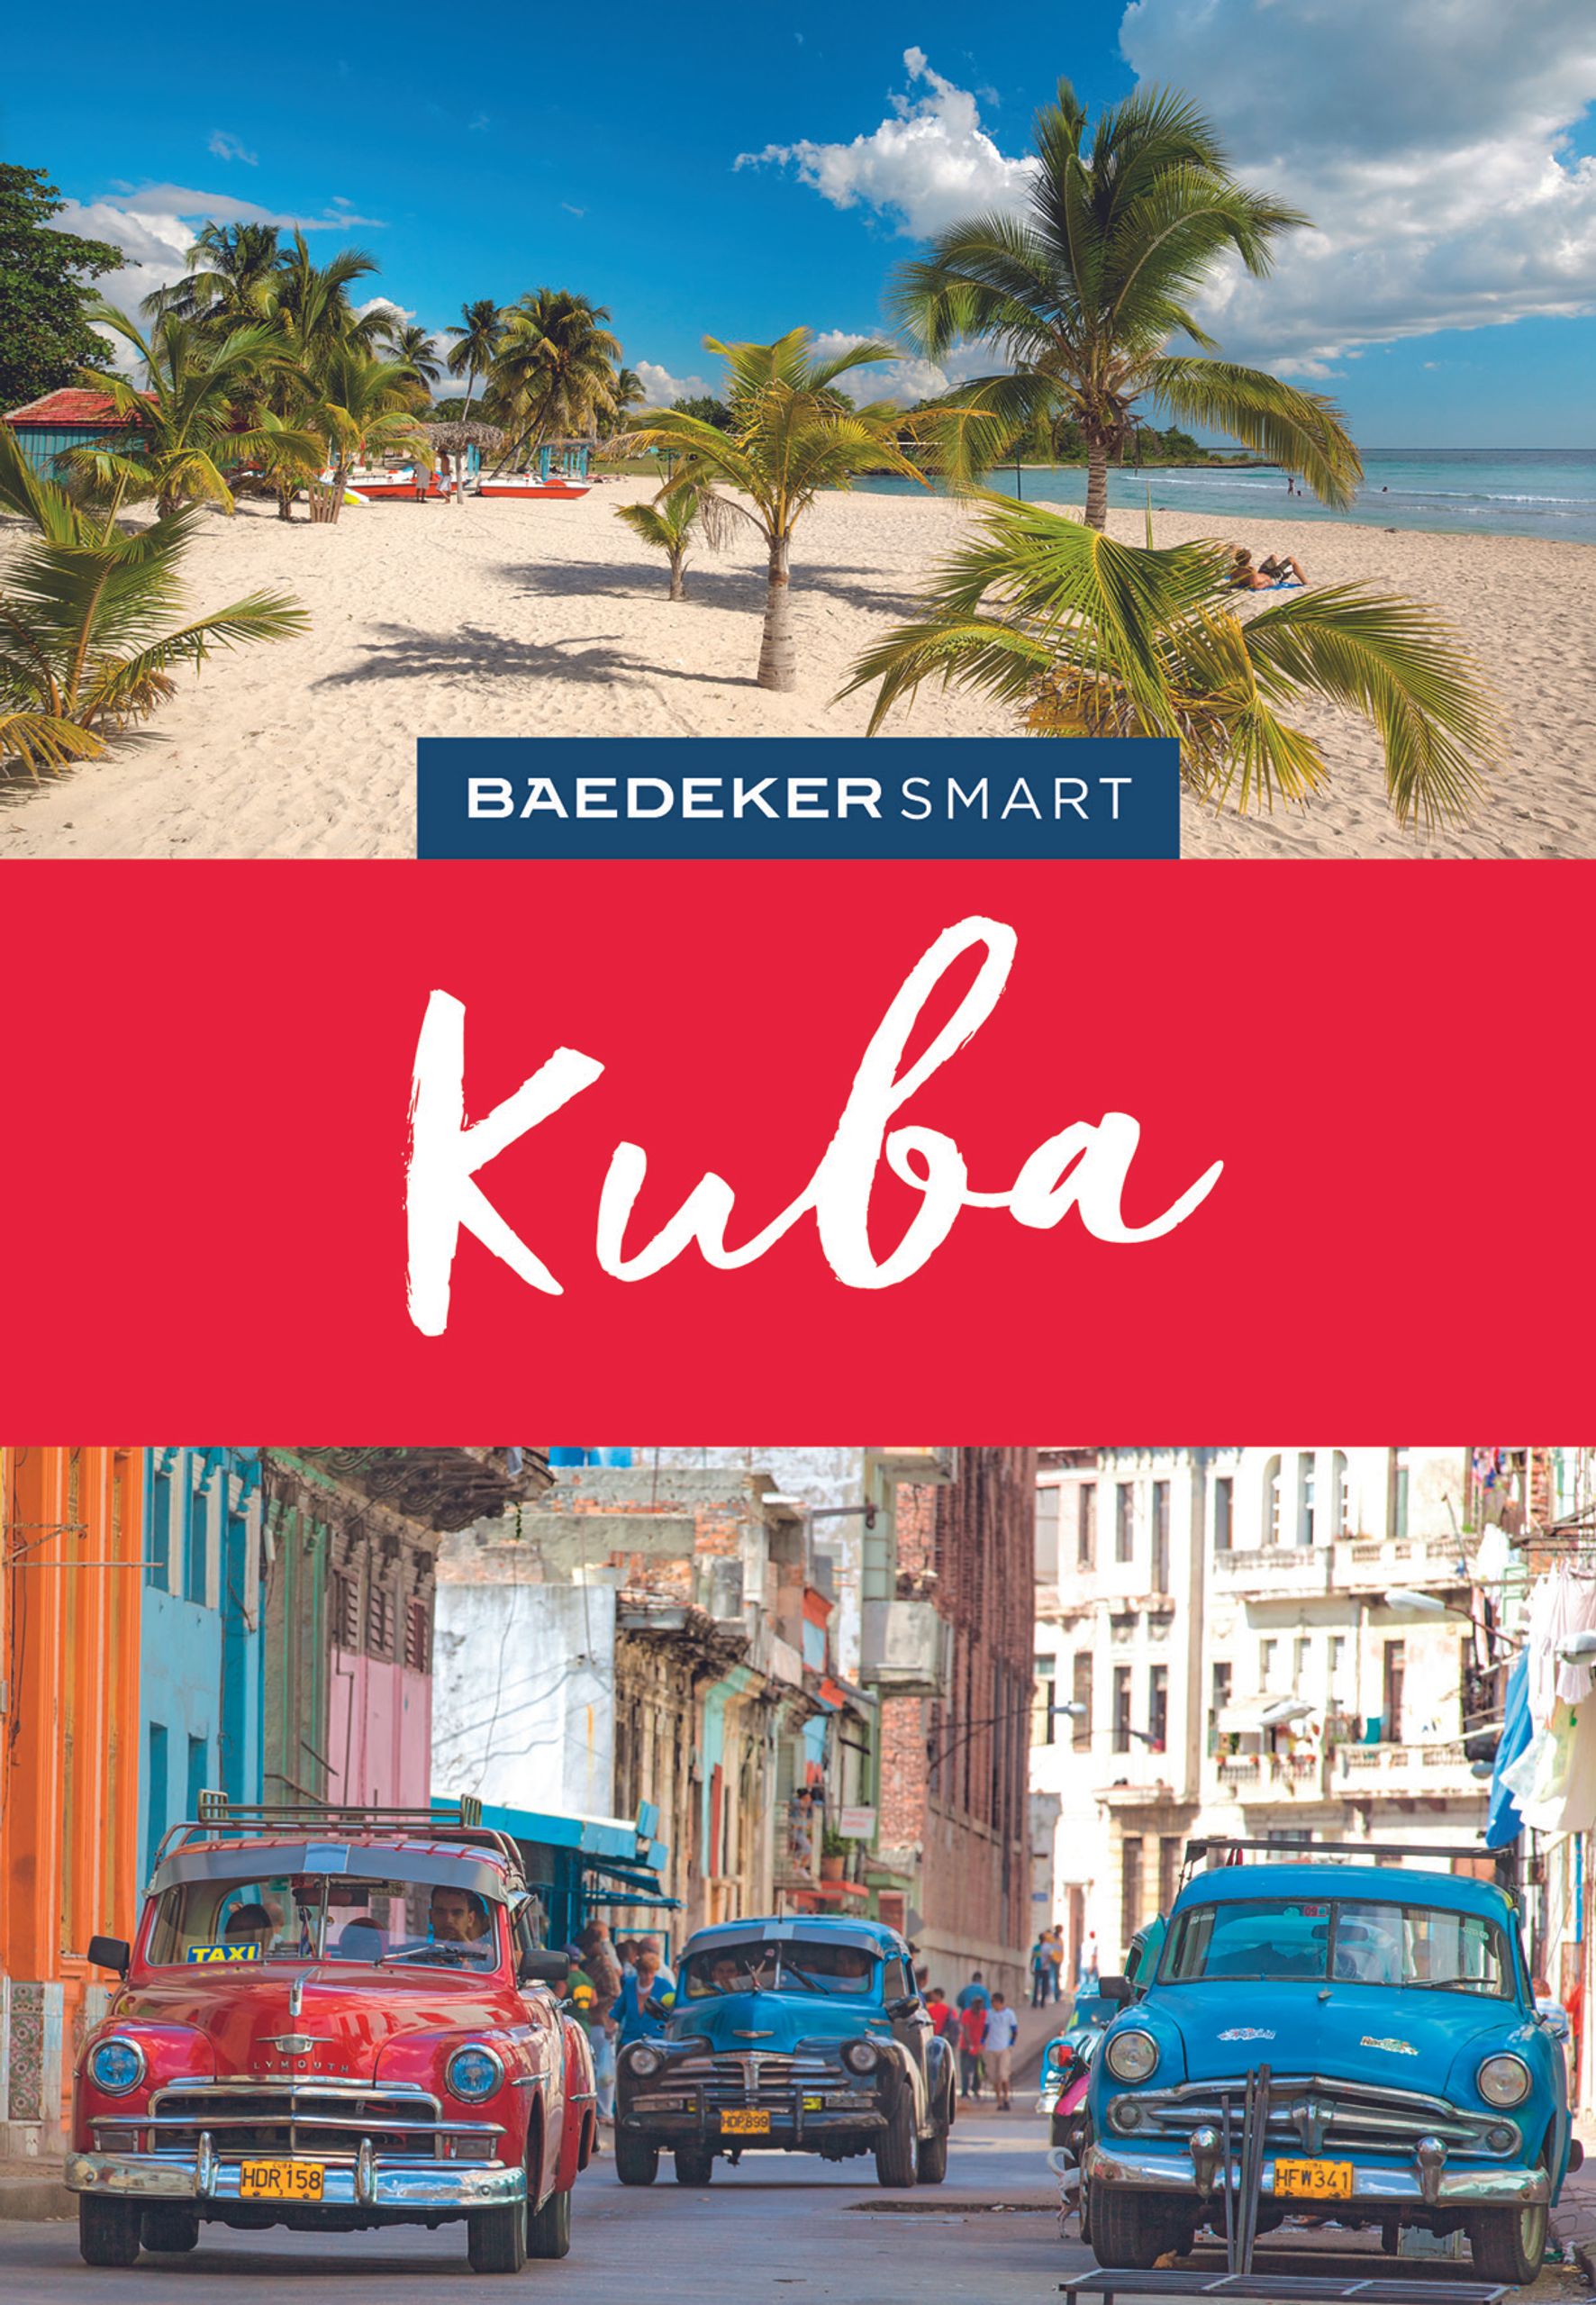 Baedeker Kuba (eBook)